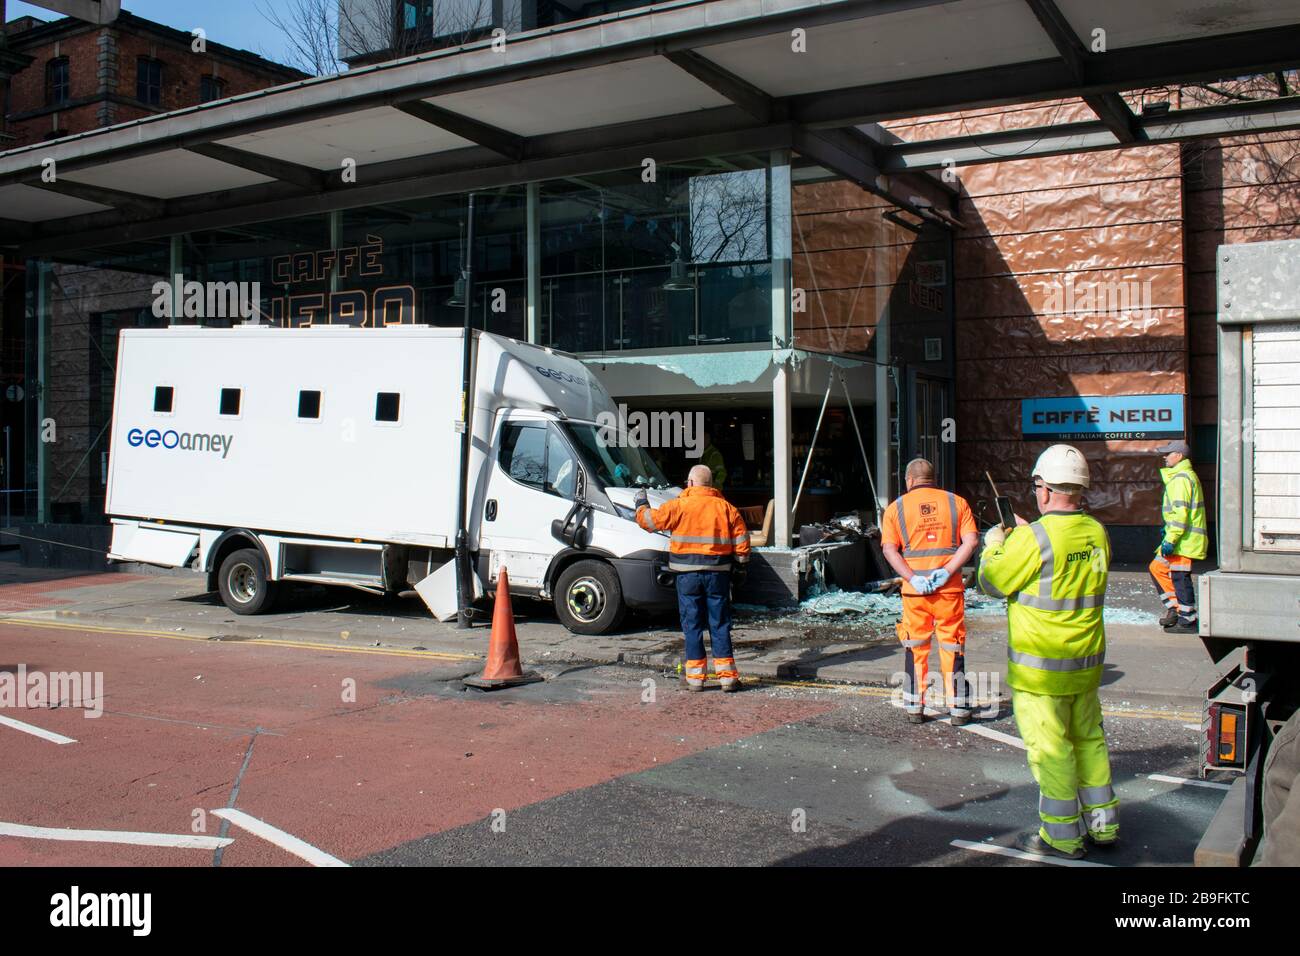 Une camionnette d'escorte de prisonniers Geoamey en collision avec la façade de Cafe Nero verrouillée sur Portland Street centre de Manchester UK avec du personnel de récupération. Banque D'Images